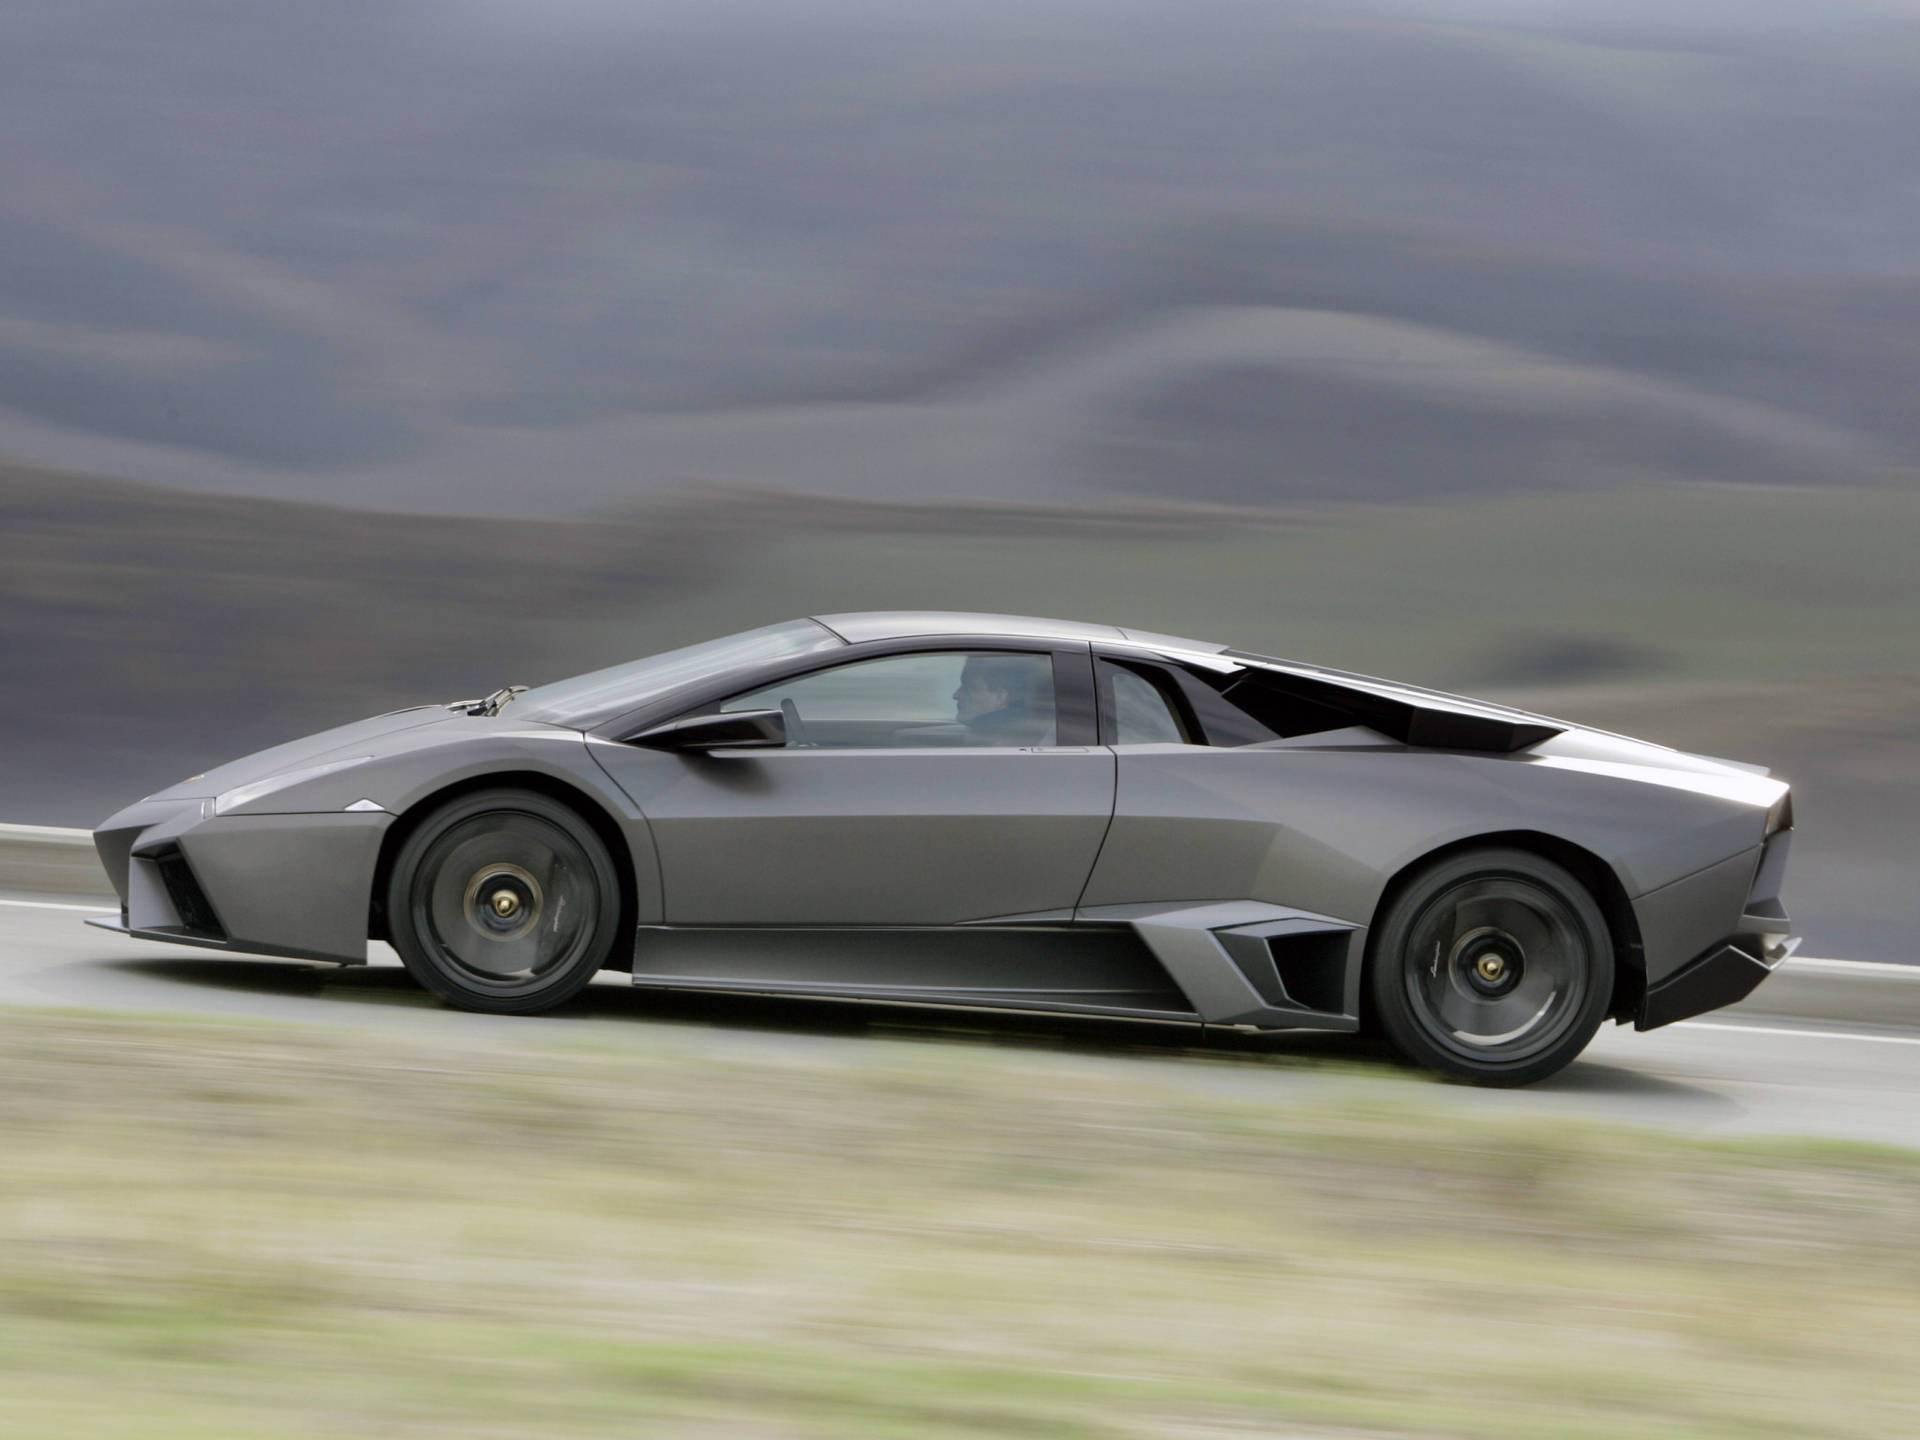 4k Lamborghini Reventon Speeding